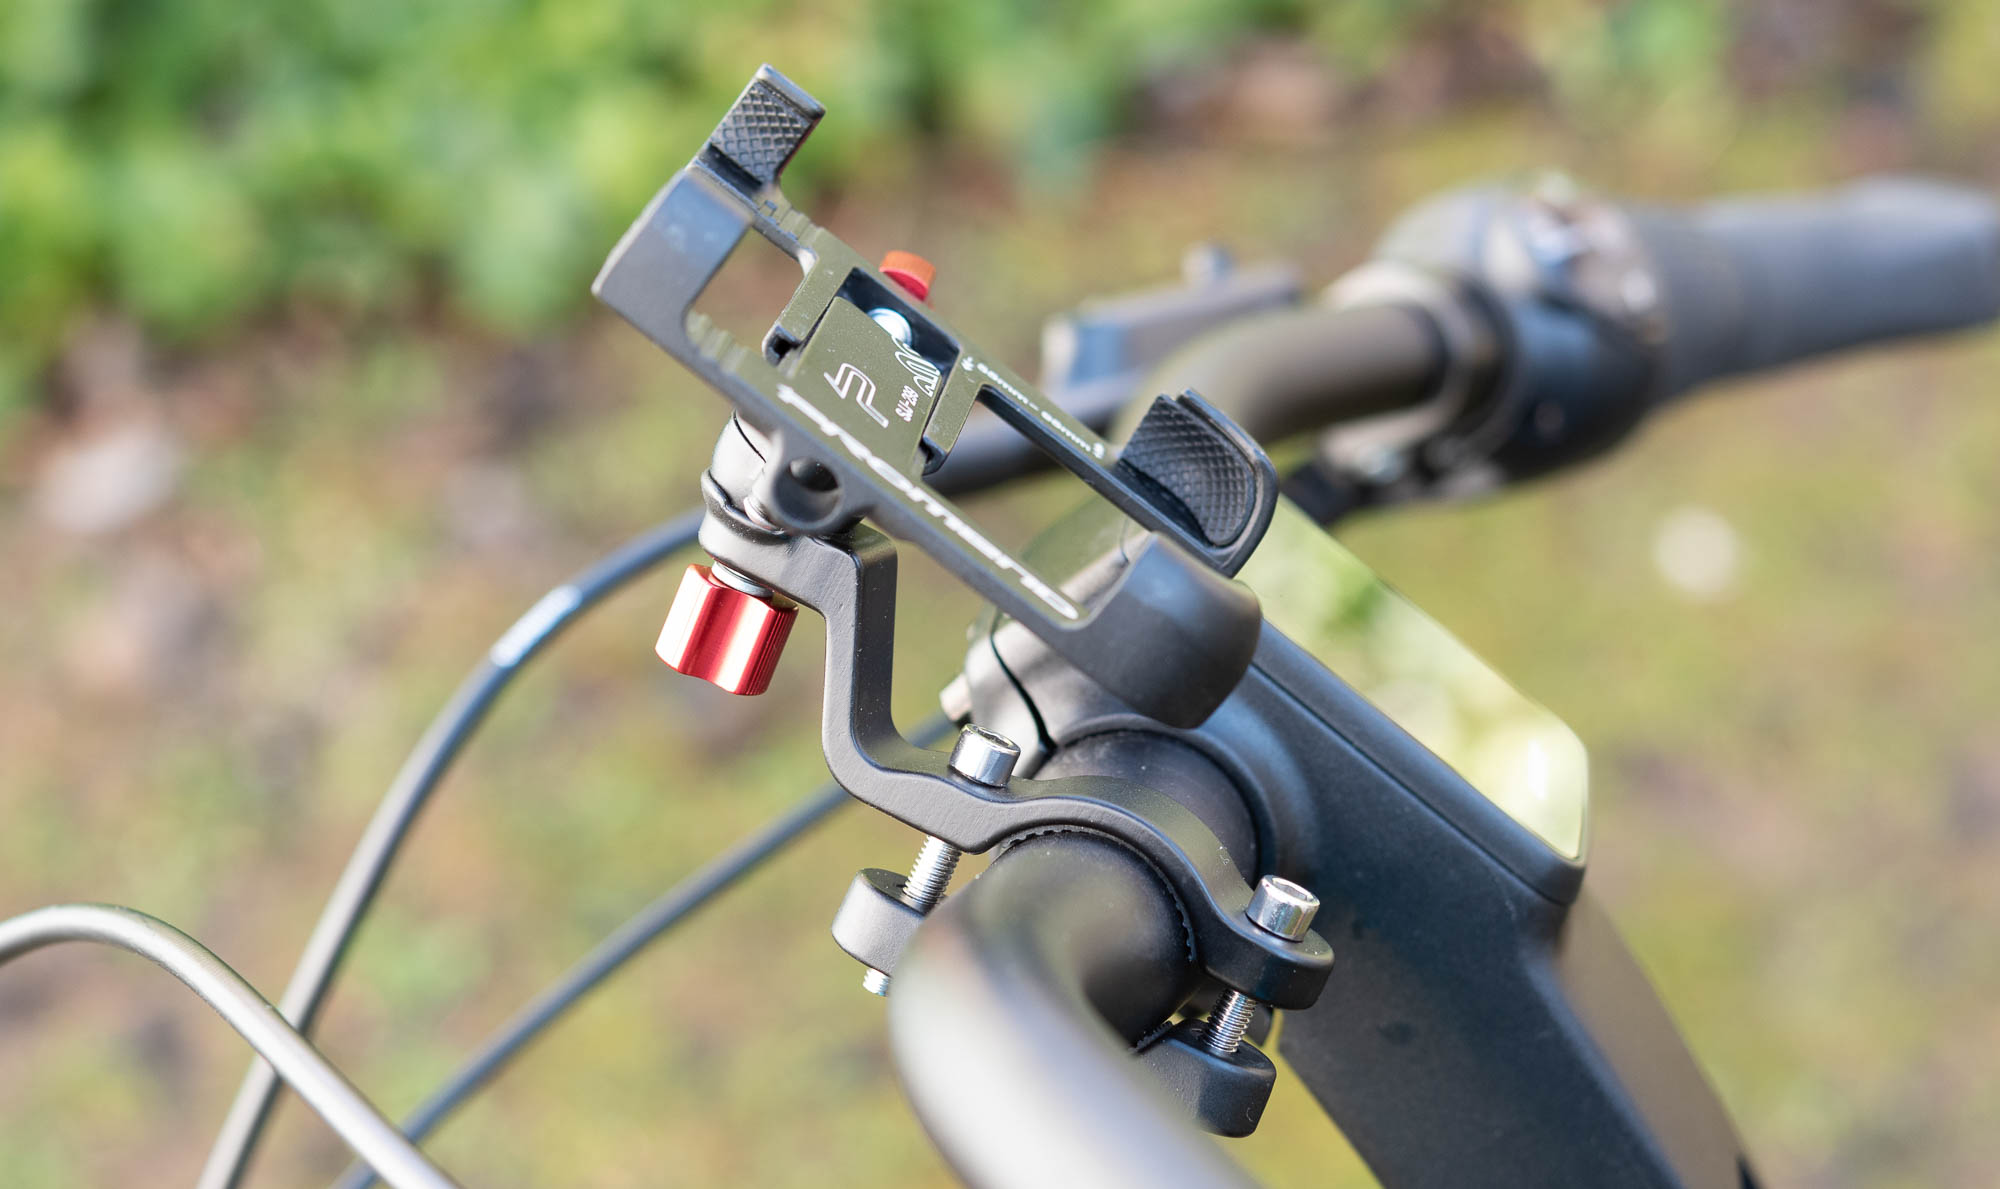 Universal Verstellbarer Handy Halterung Outdoor Fahrradhalterung Motorrad Fahrrad Lenker Mit 360 Drehen Für 3,5-6,5 Zoll Smartphone Fahrrad Handyhalterung Anti-Shake GPS Telefonhalter 